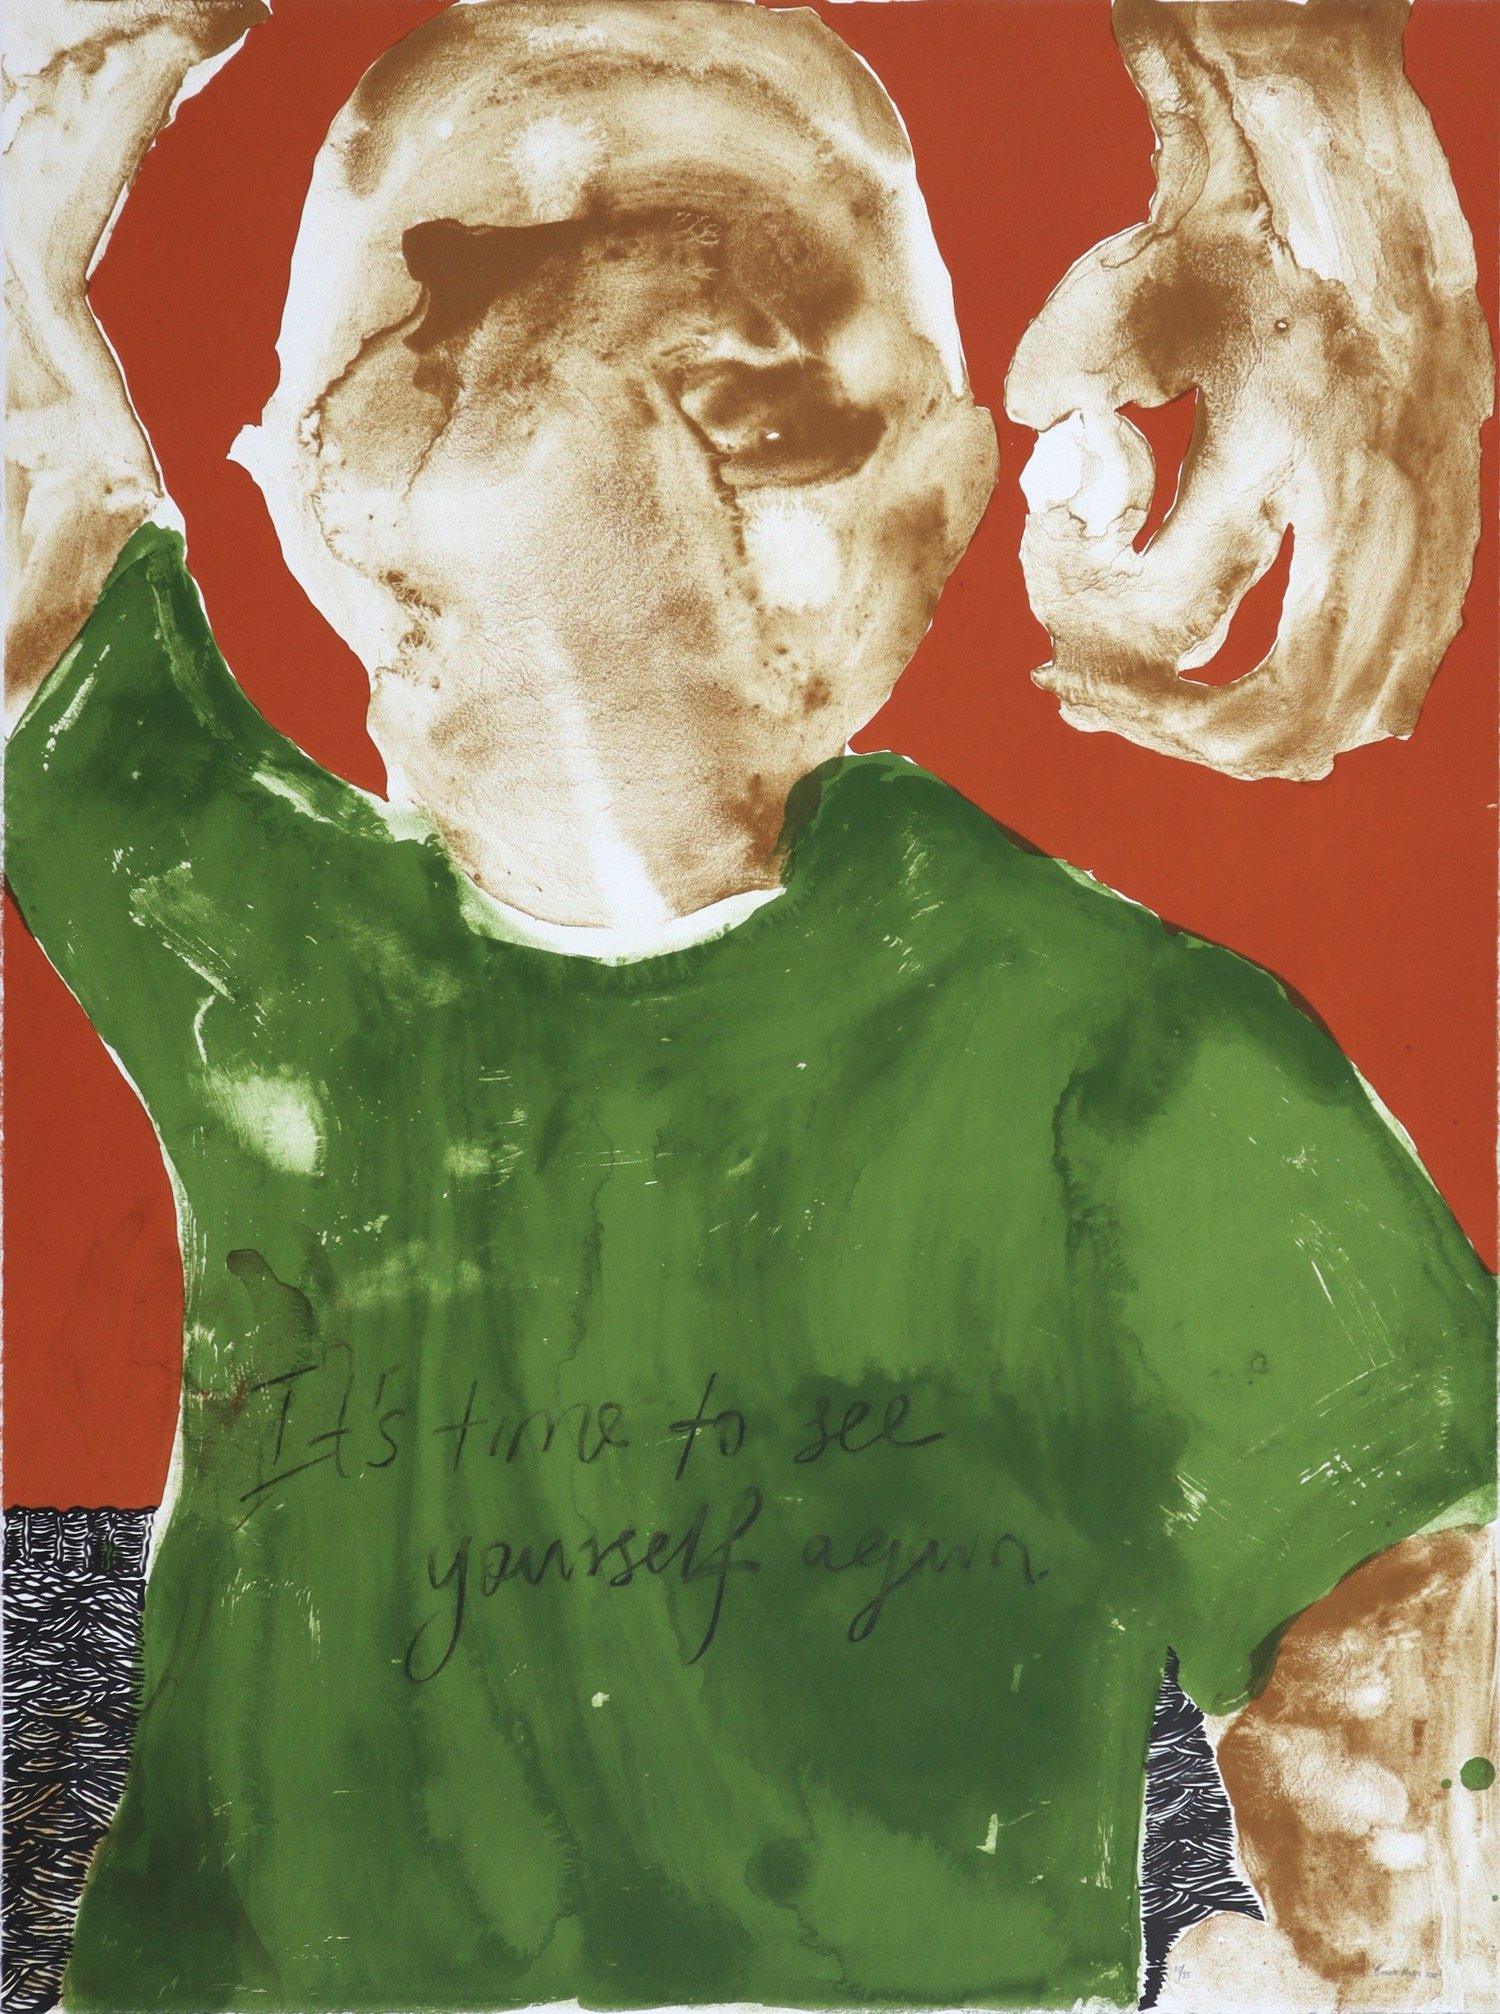 Banele Khoza colour lithograph of mans head and torso wearing green t-shirt